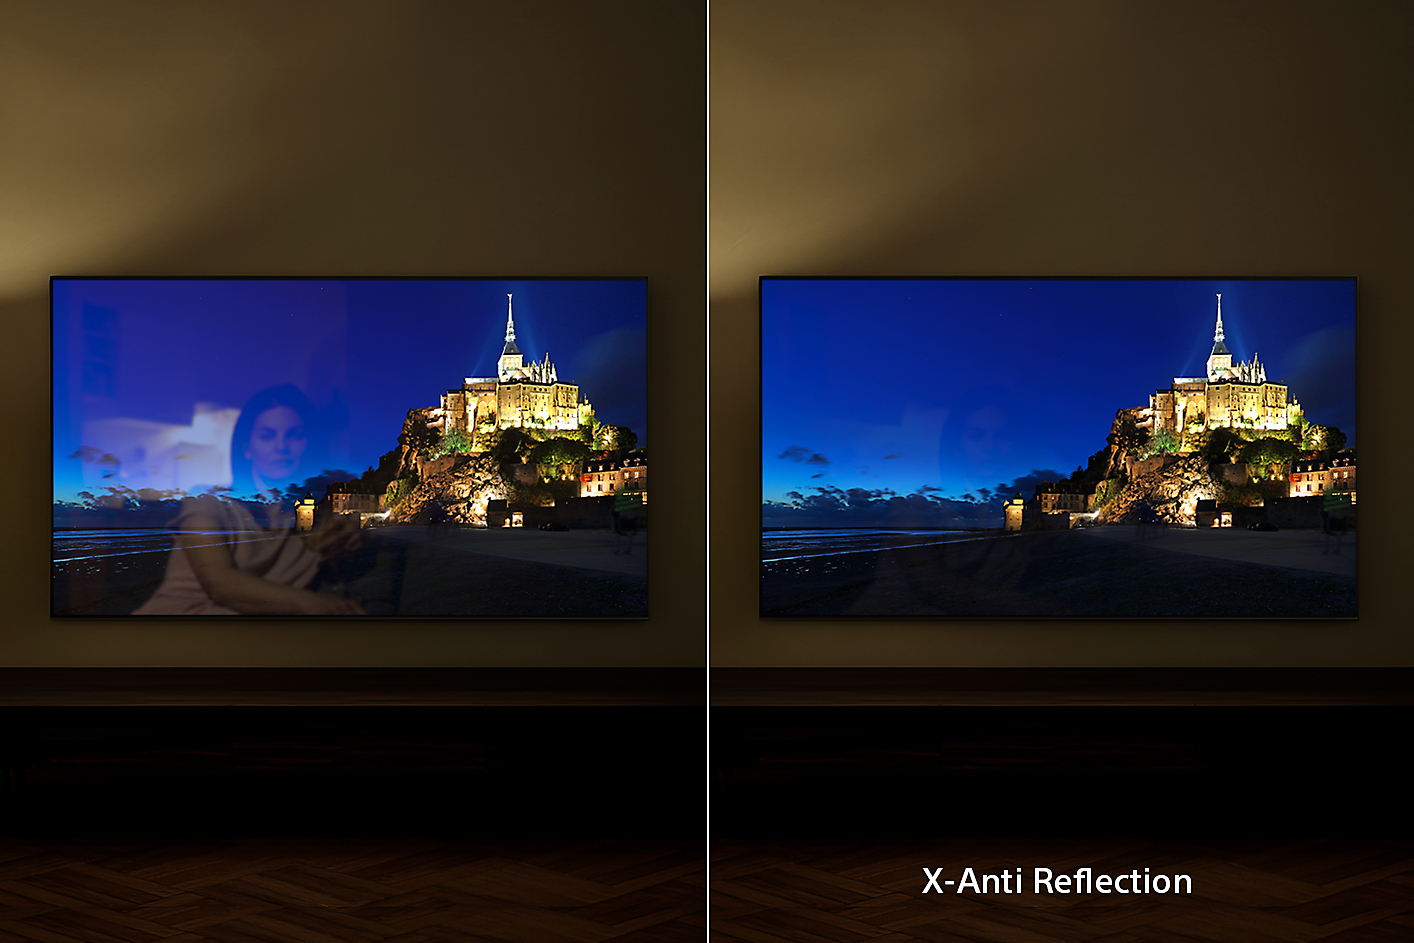 Twee BRAVIA-tv's aan de wand met screenshots van een stad op een heuvel waarbij het rechterbeeld de voordelen toont van X-Anti Reflection